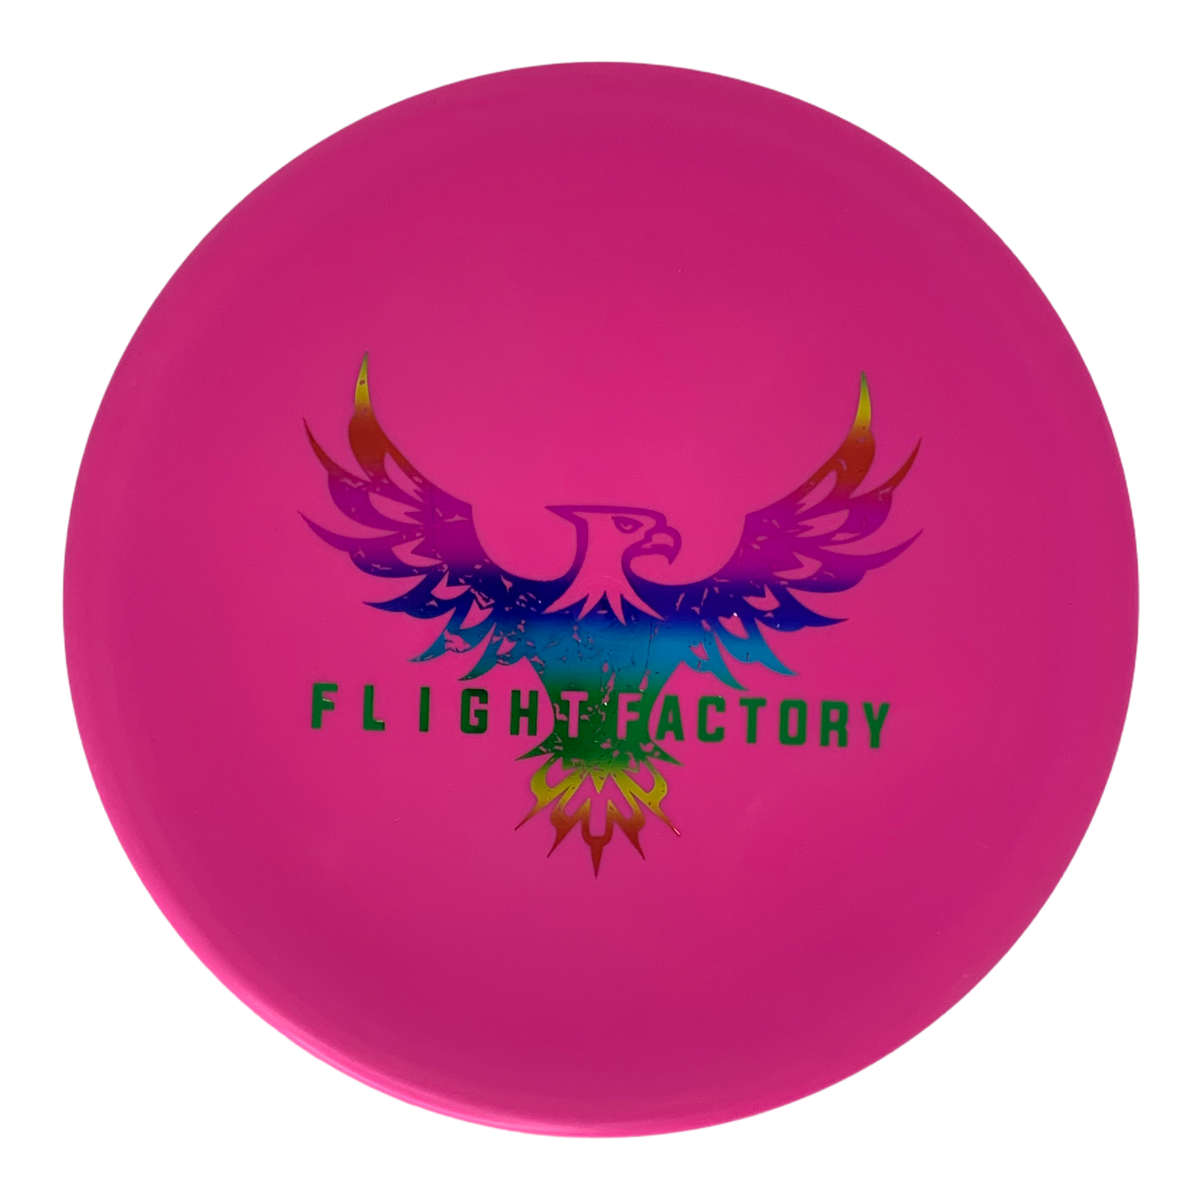 Flight Factory Eagle Discmania Evolution Soft Exo Tactic